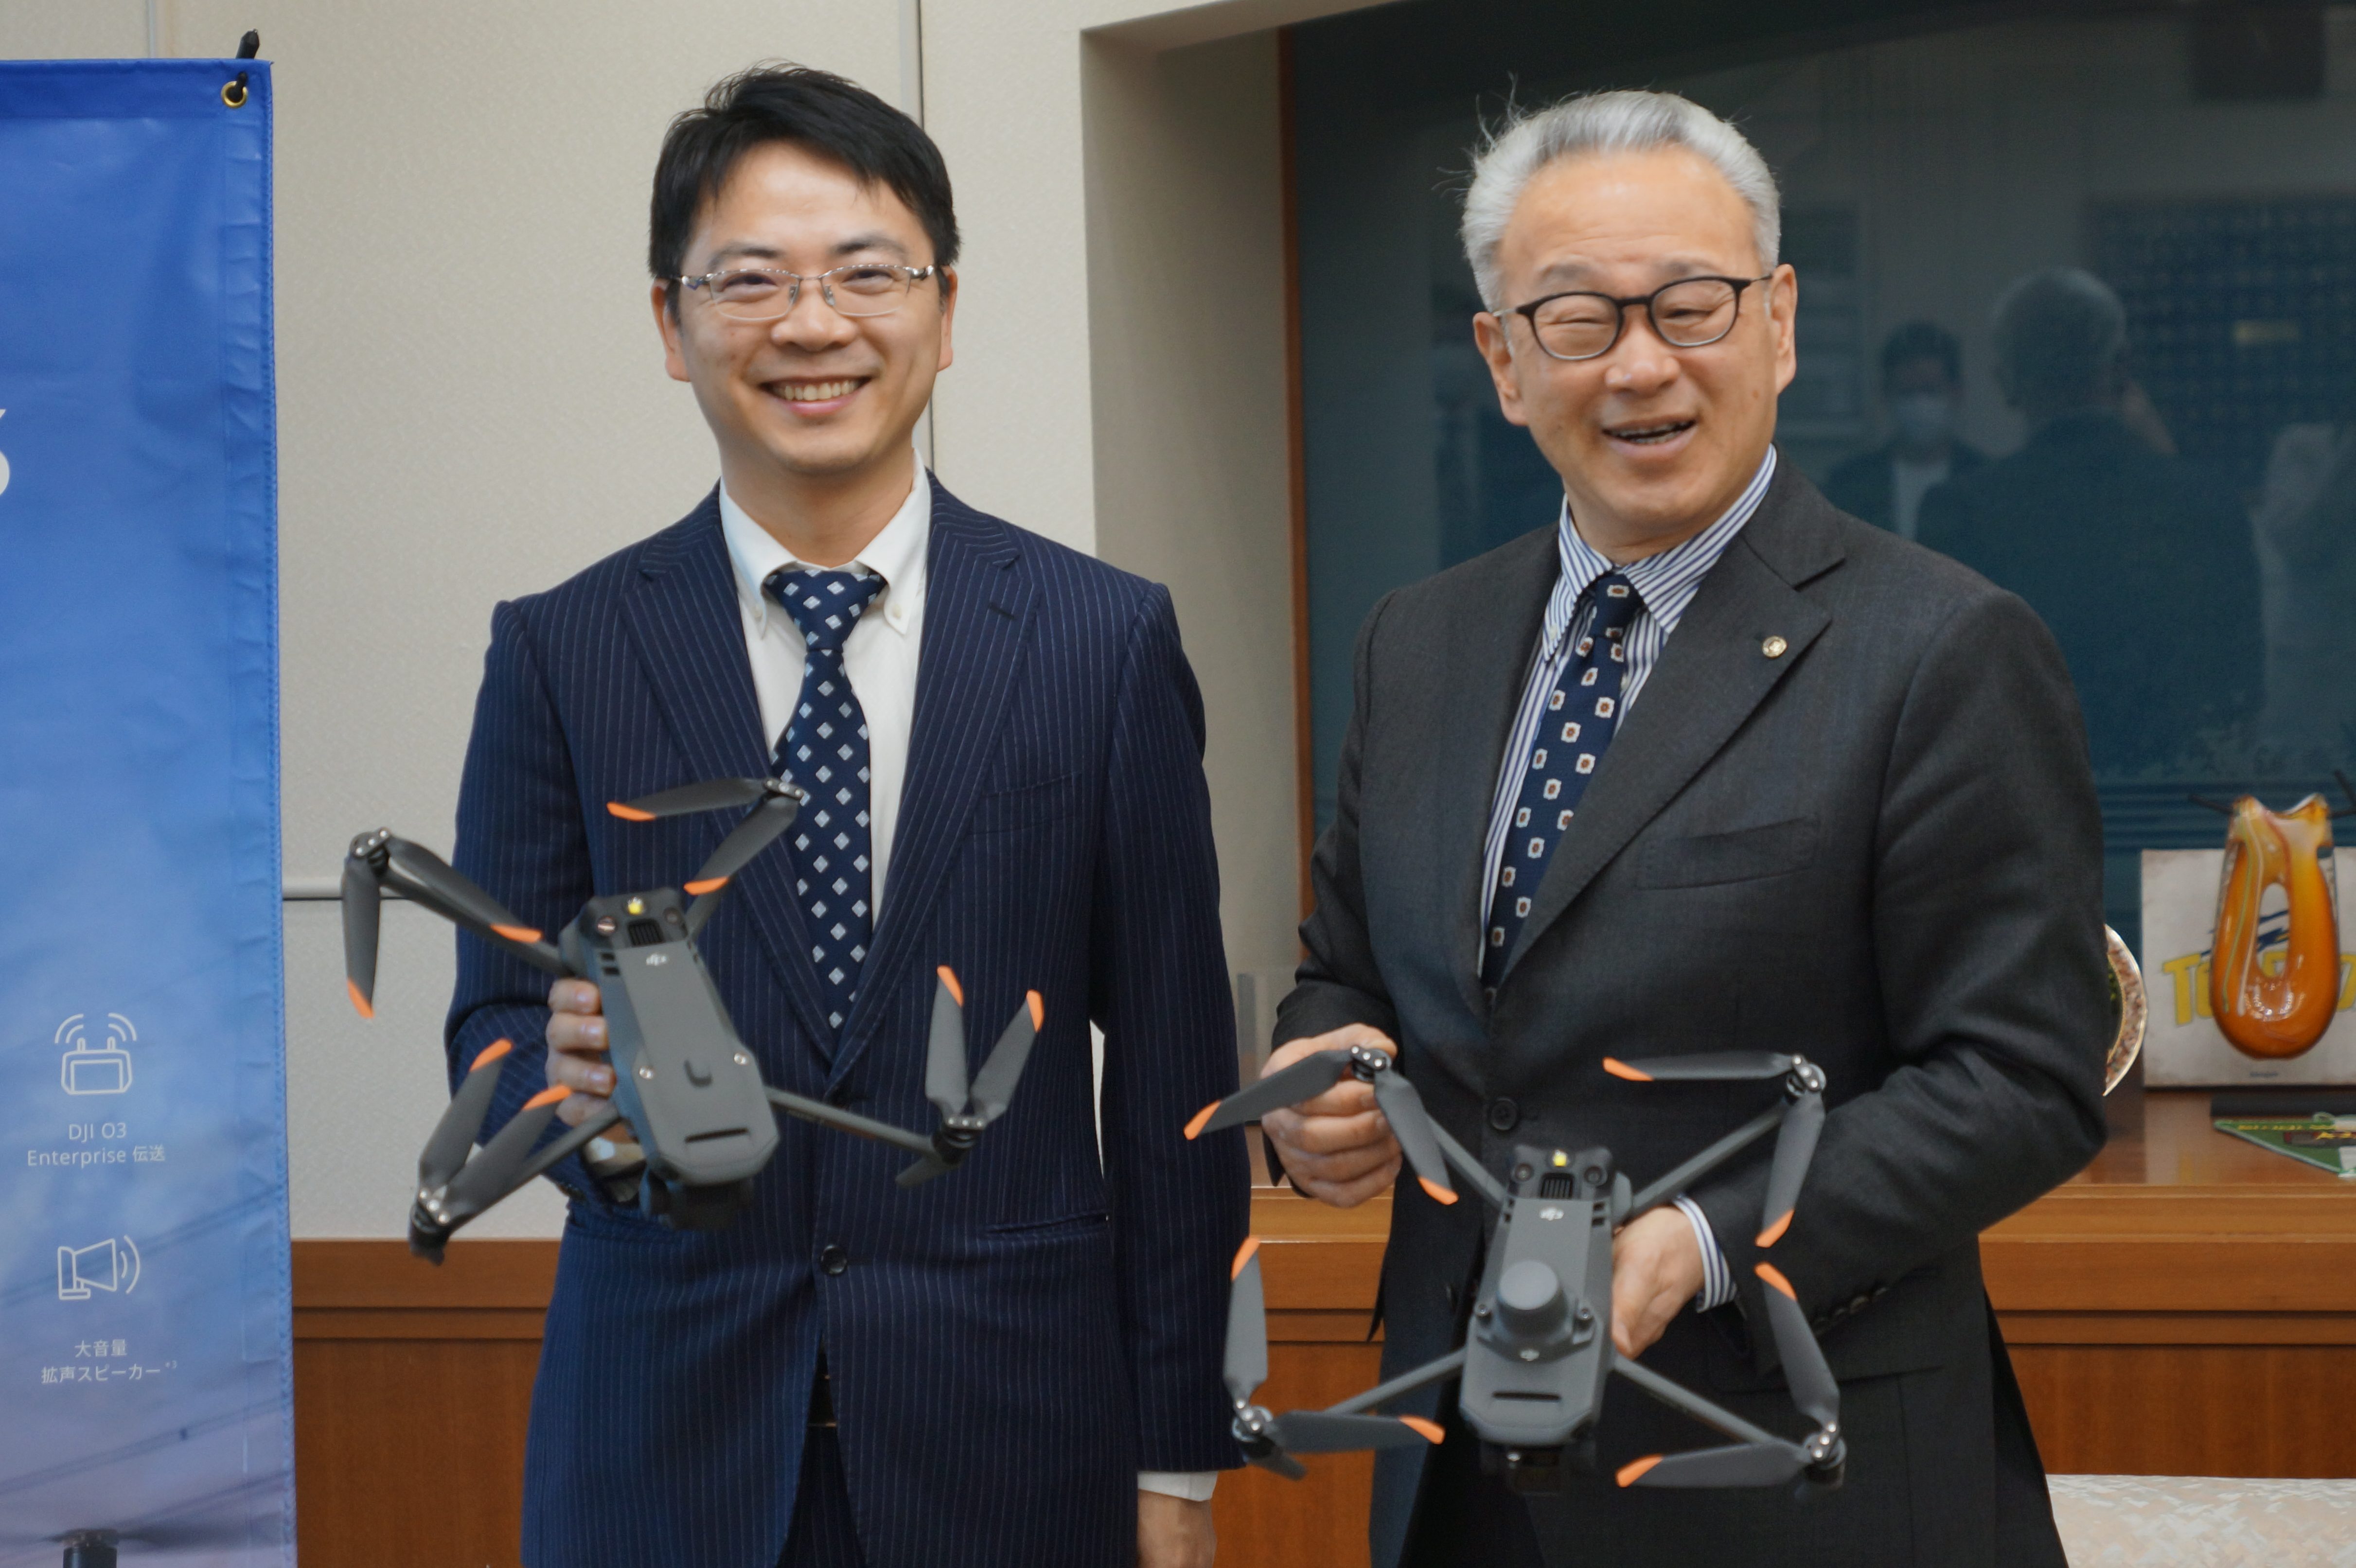 対談後にDJI社の最新ドローンを手にして記念撮影に応じる浅井市長（右）と呉代表（左）